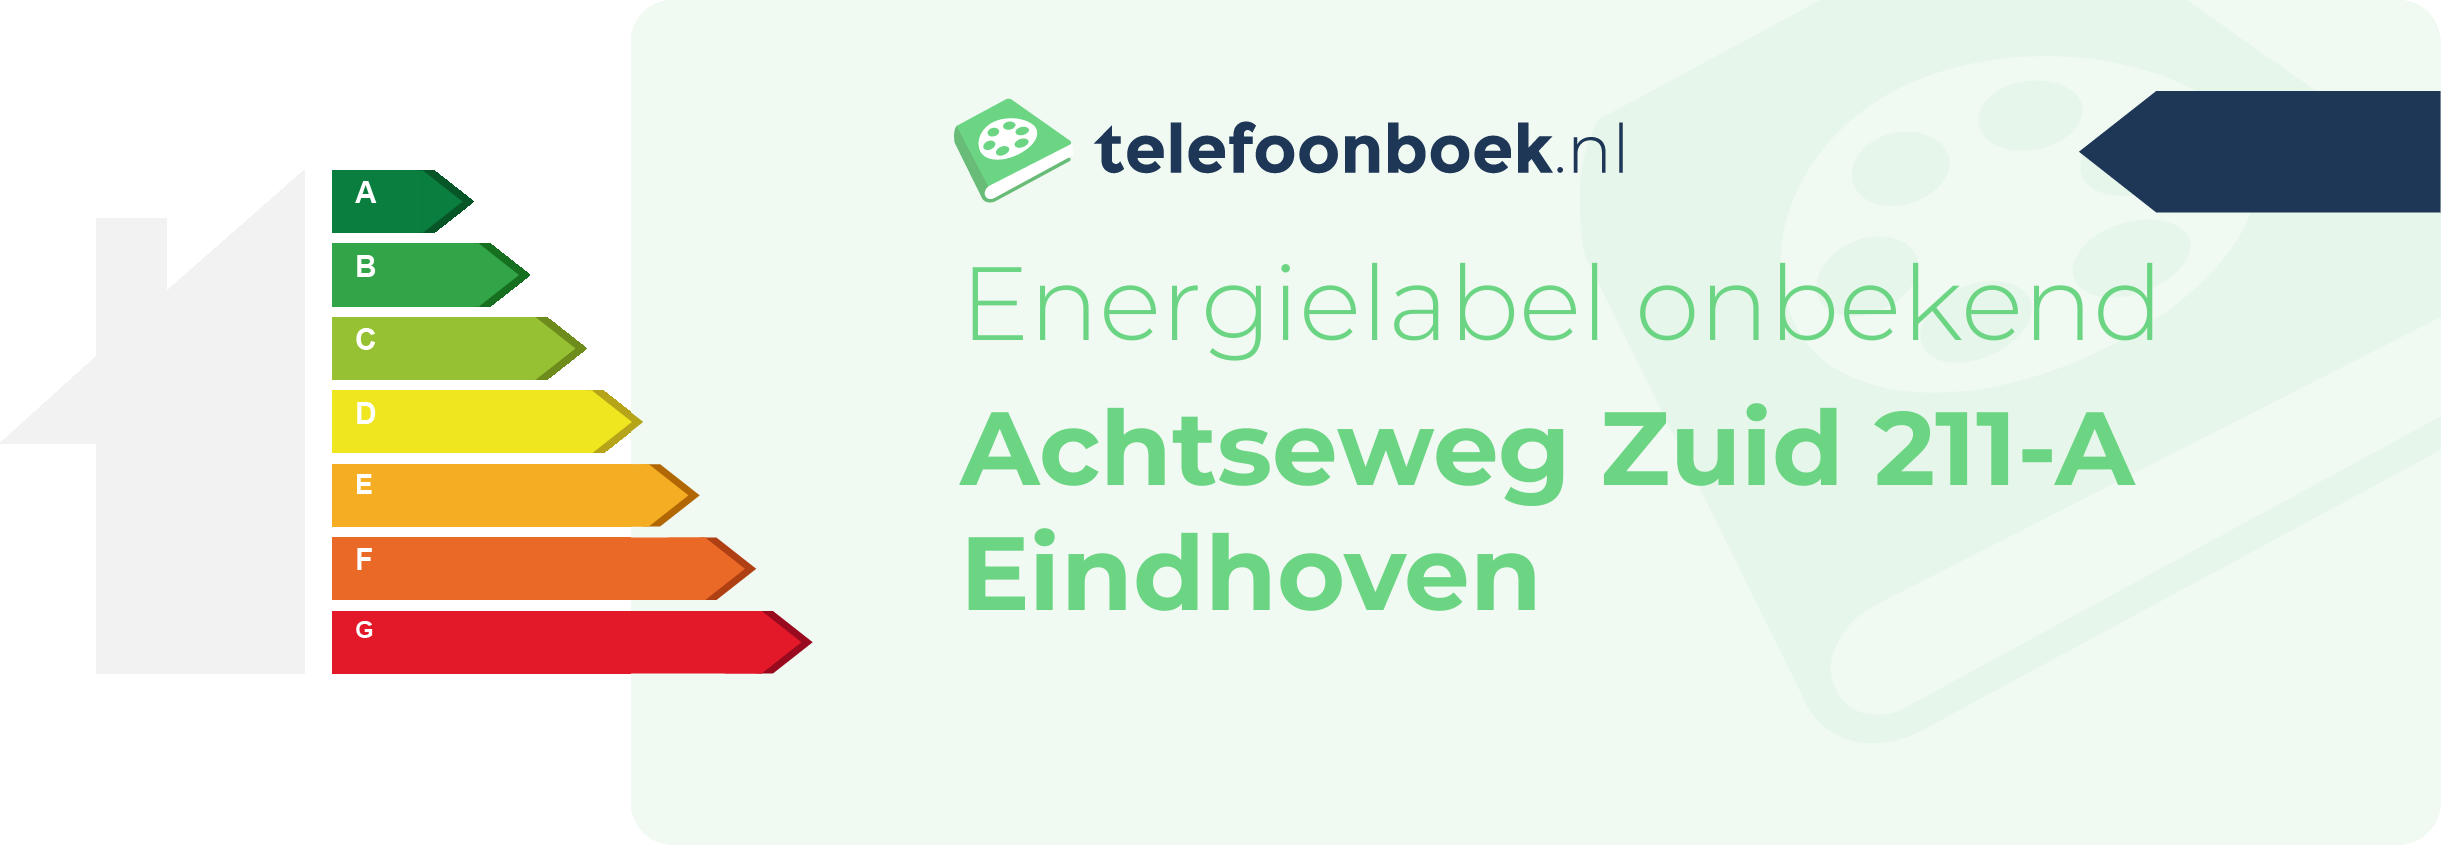 Energielabel Achtseweg Zuid 211-A Eindhoven